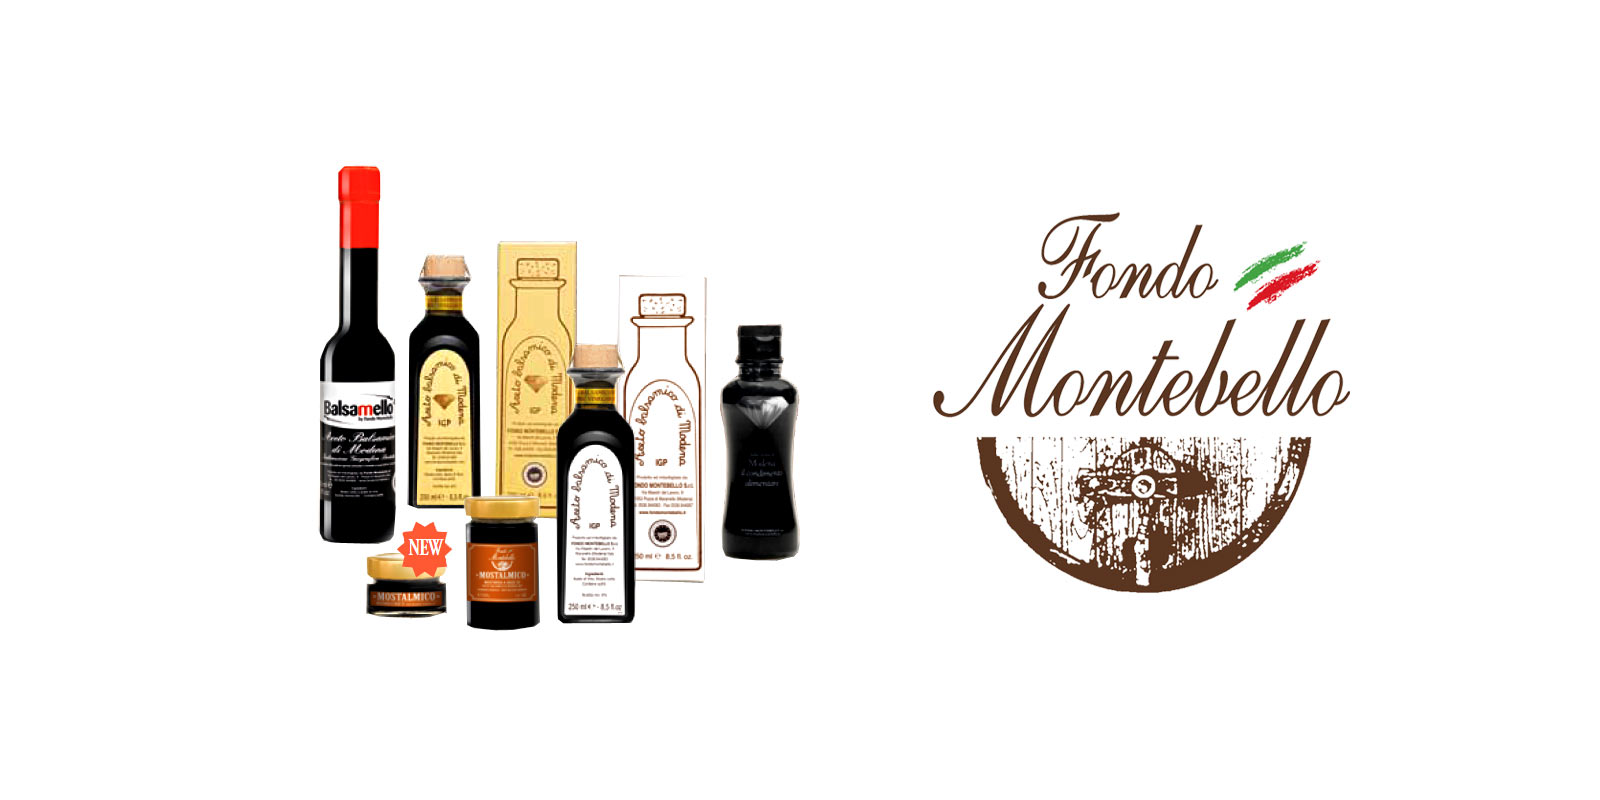 Aceto Balsamico Fondo Montebello Fondo Montebello wykorzystuje starozytne i tradycyjne metody produkcji, aby wyprodukowac doskonaly ocet balsamiczny z regionu Maranello we Wloszech.